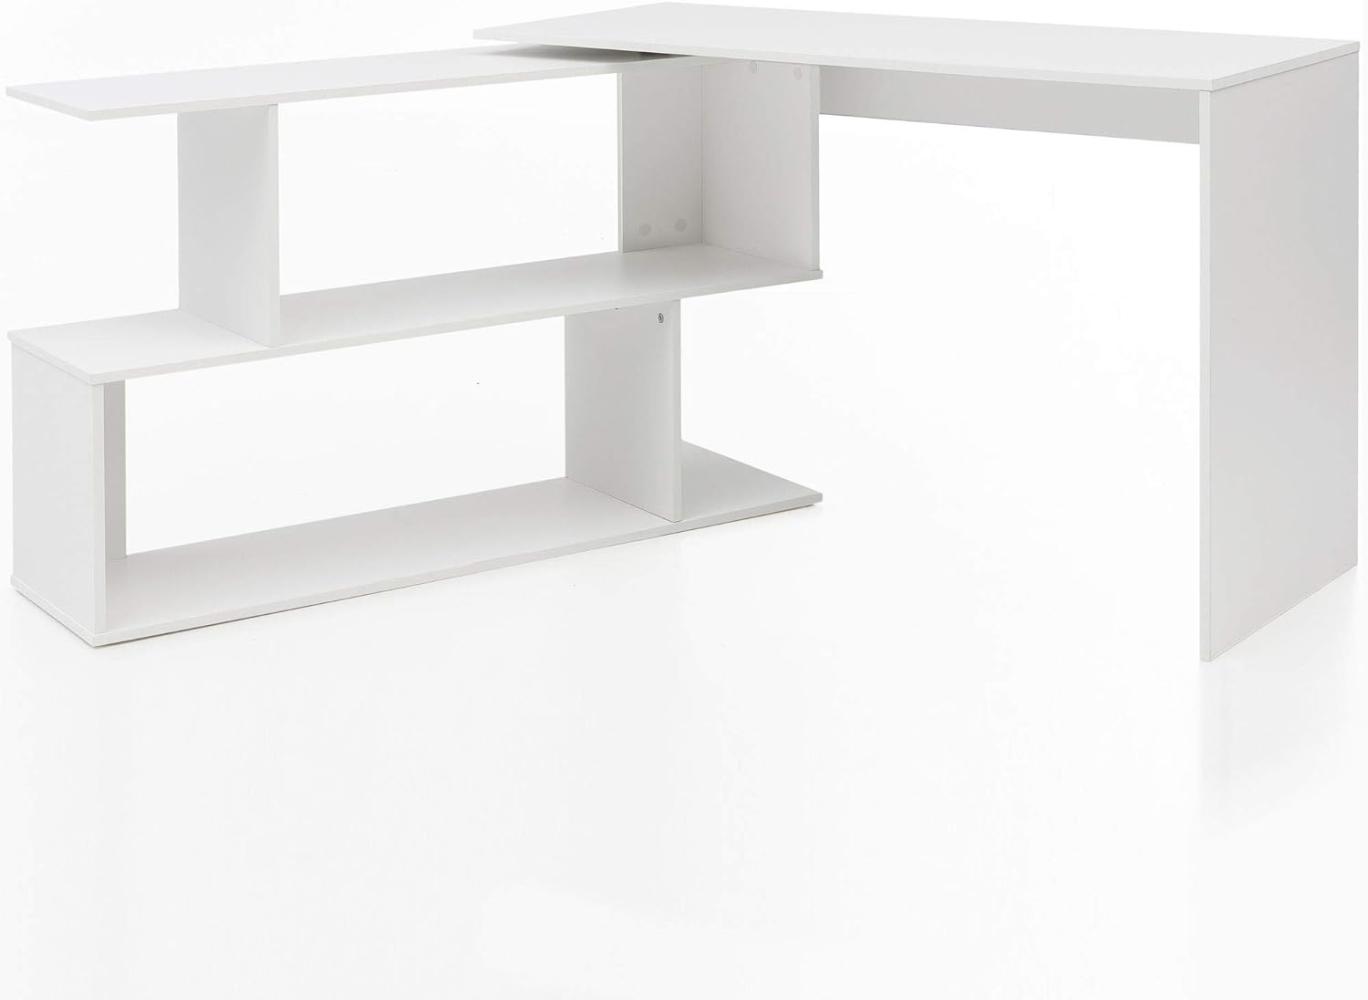 Wohnling 'FB51521' Design Schreibtisch mit Ablage und Regal, Weiß Matt, 119 x 78 x 49 cm Bild 1